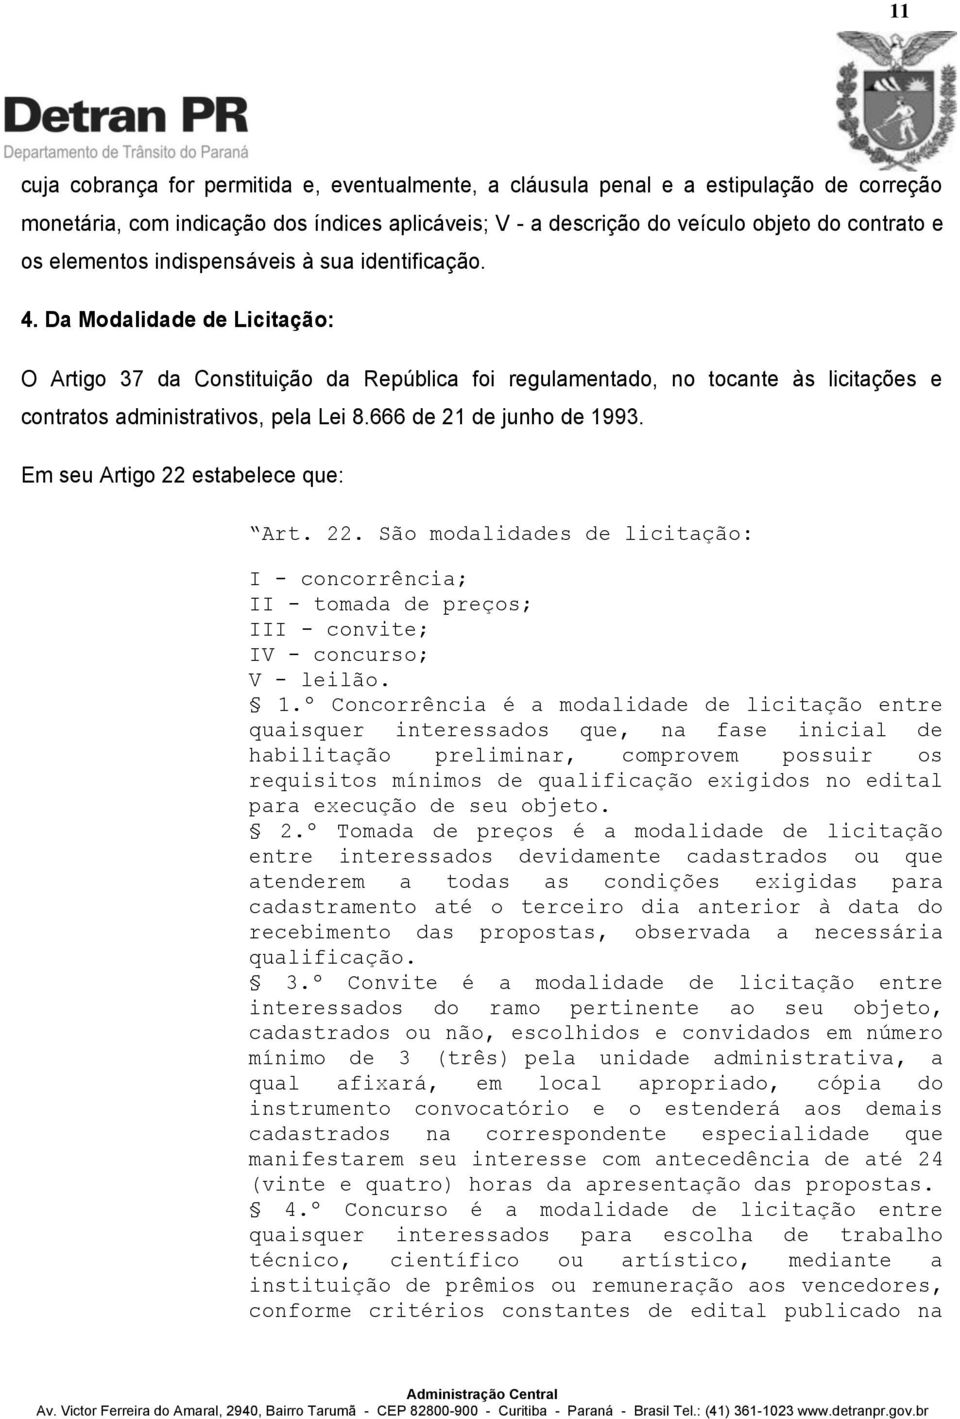 Da Modalidade de Licitação: O Artigo 37 da Constituição da República foi regulamentado, no tocante às licitações e contratos administrativos, pela Lei 8.666 de 21 de junho de 1993.